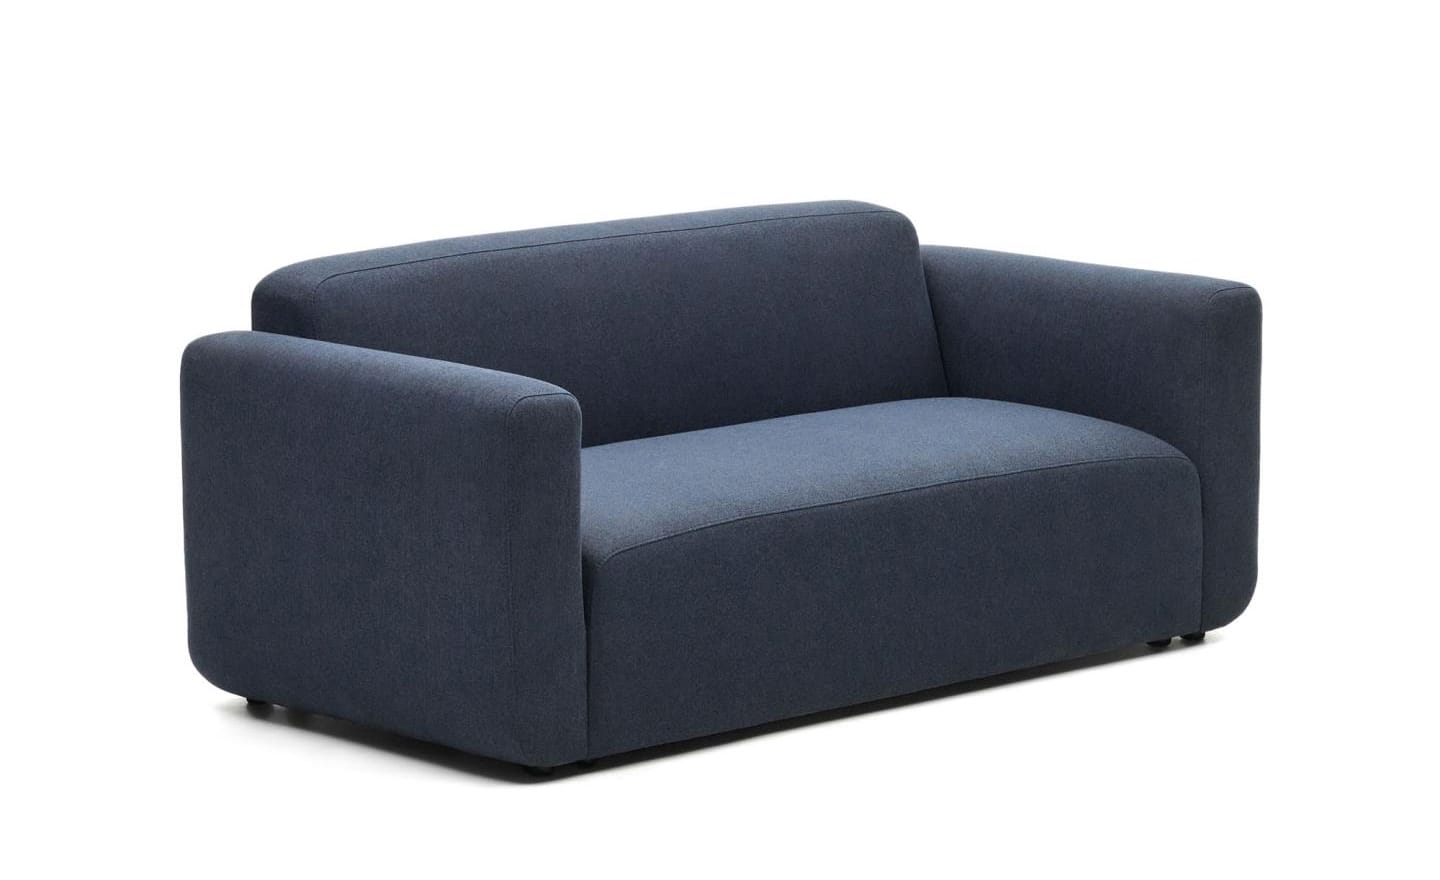 Sofá de 2 Lugares Neom Azul, sofá estofado em tecido azul estruturado, modular e versátil.